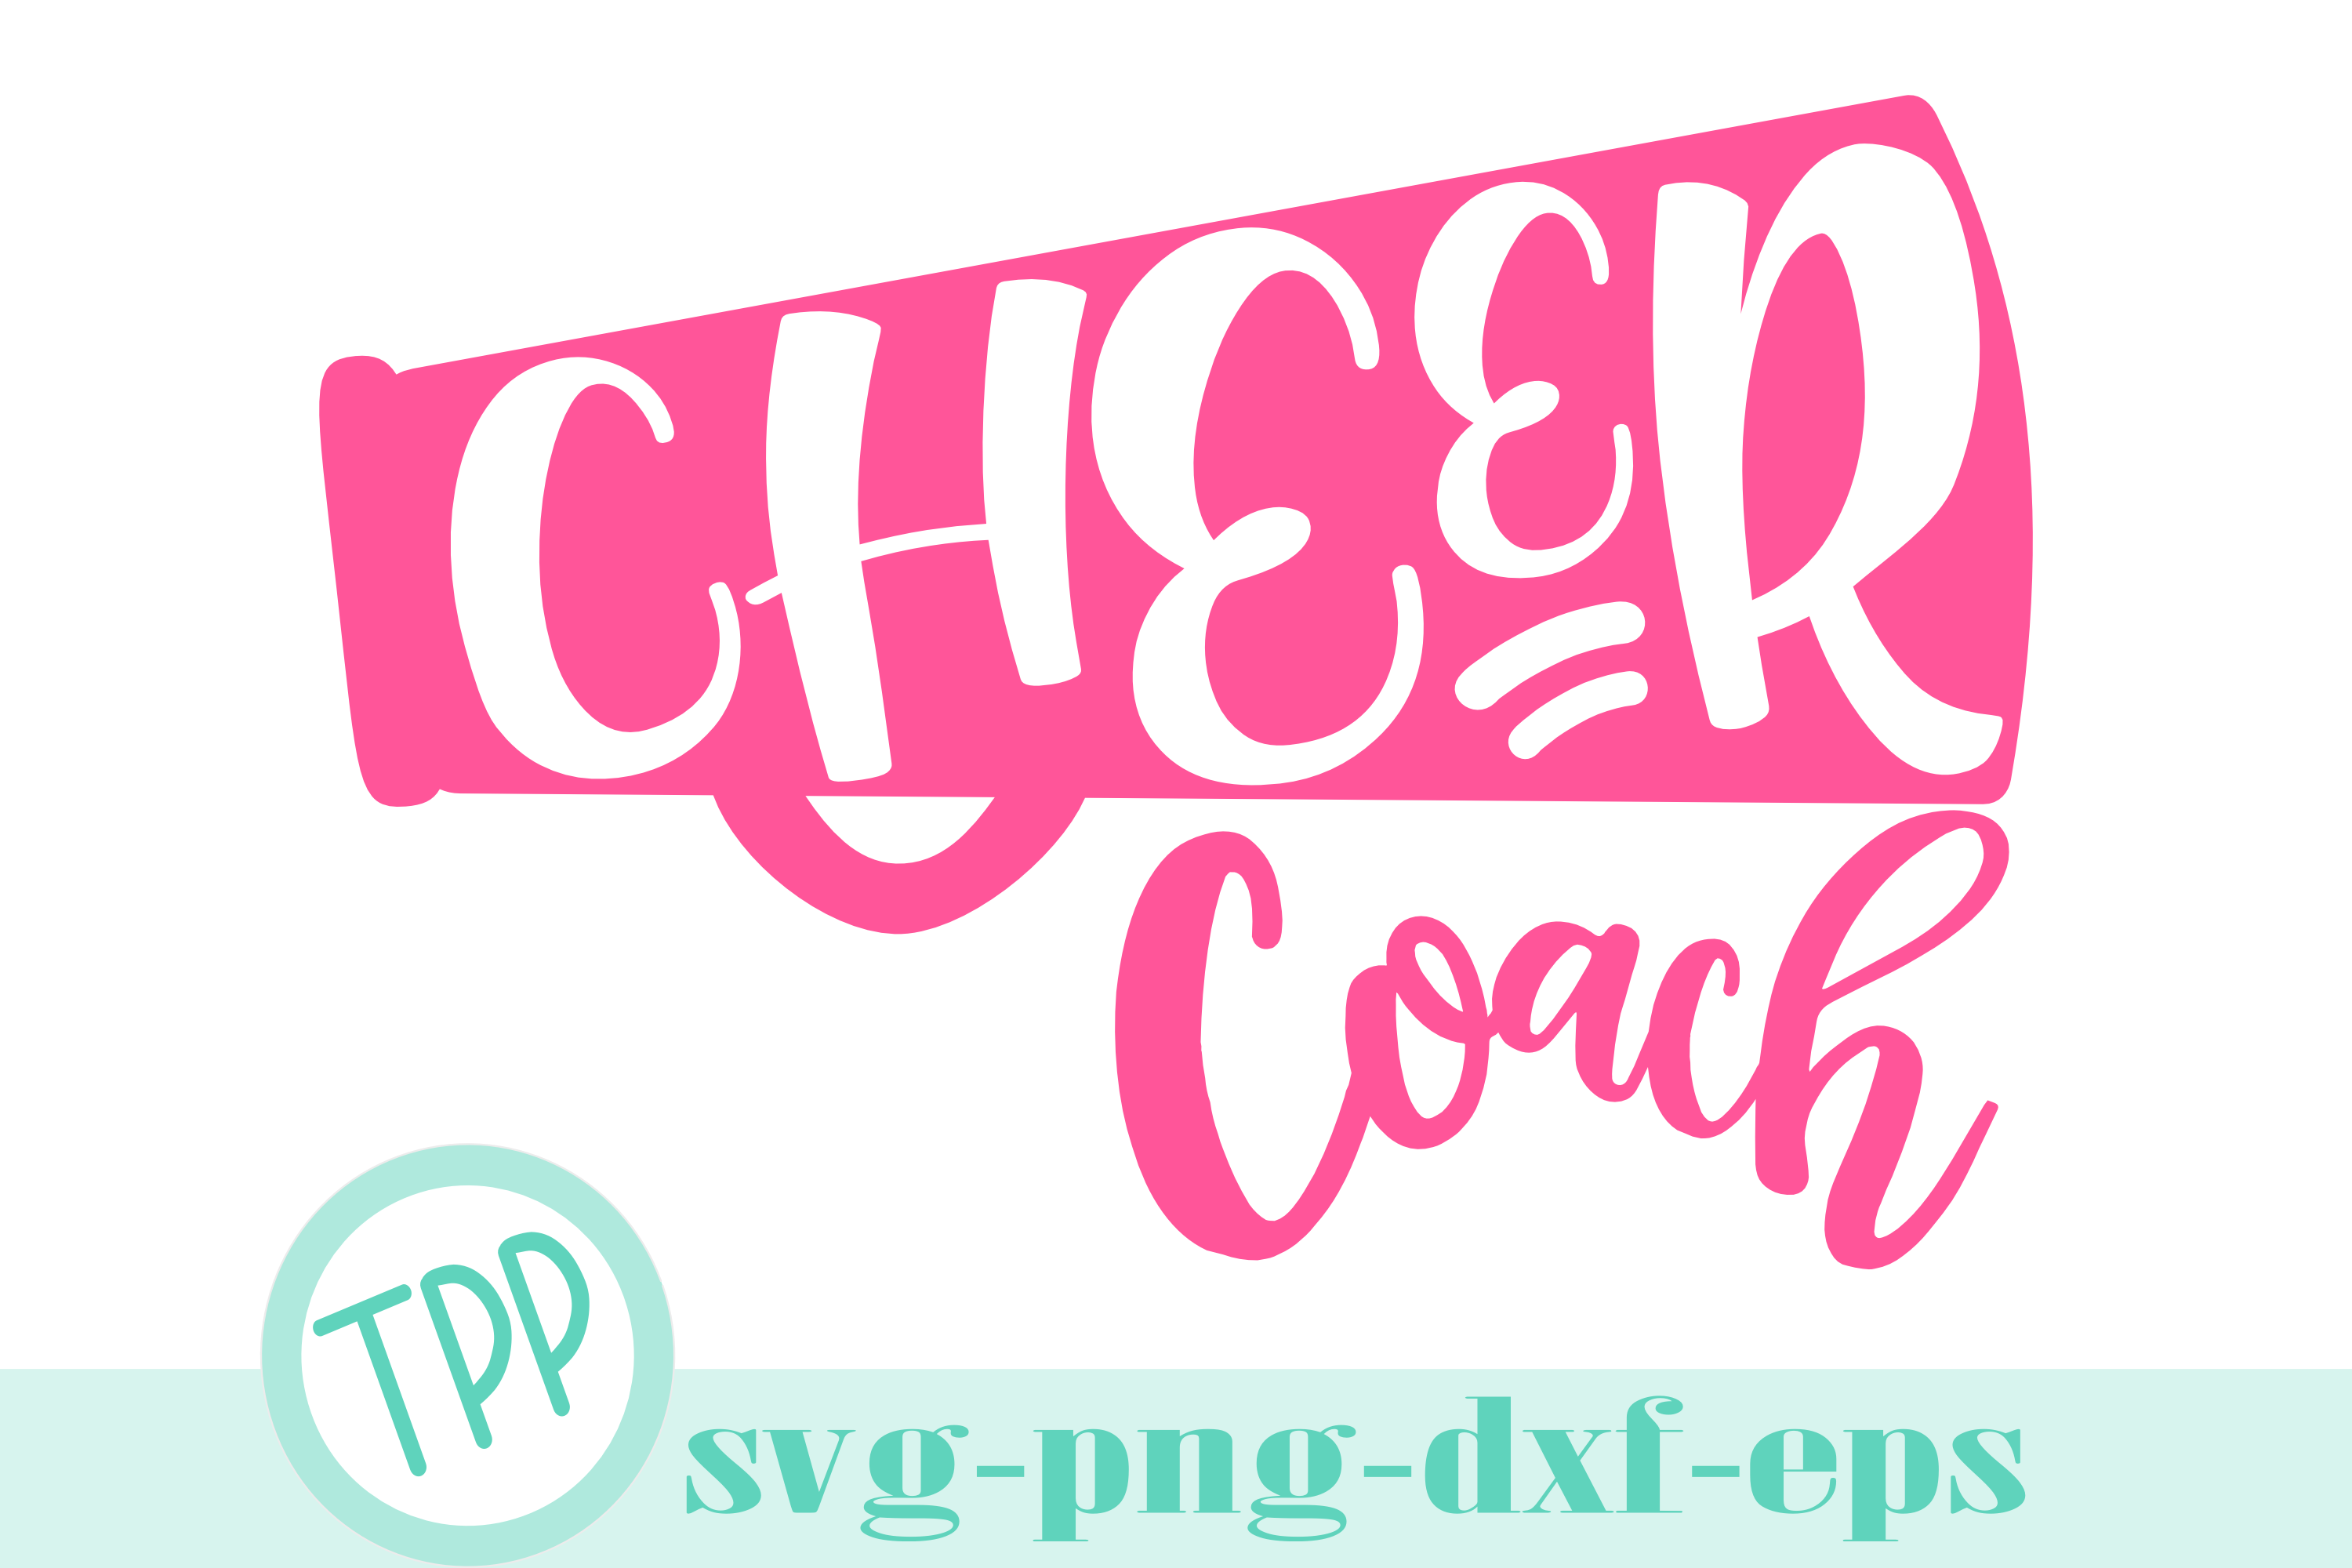 Cheer Coach svg, cheer svg, cheerleader design